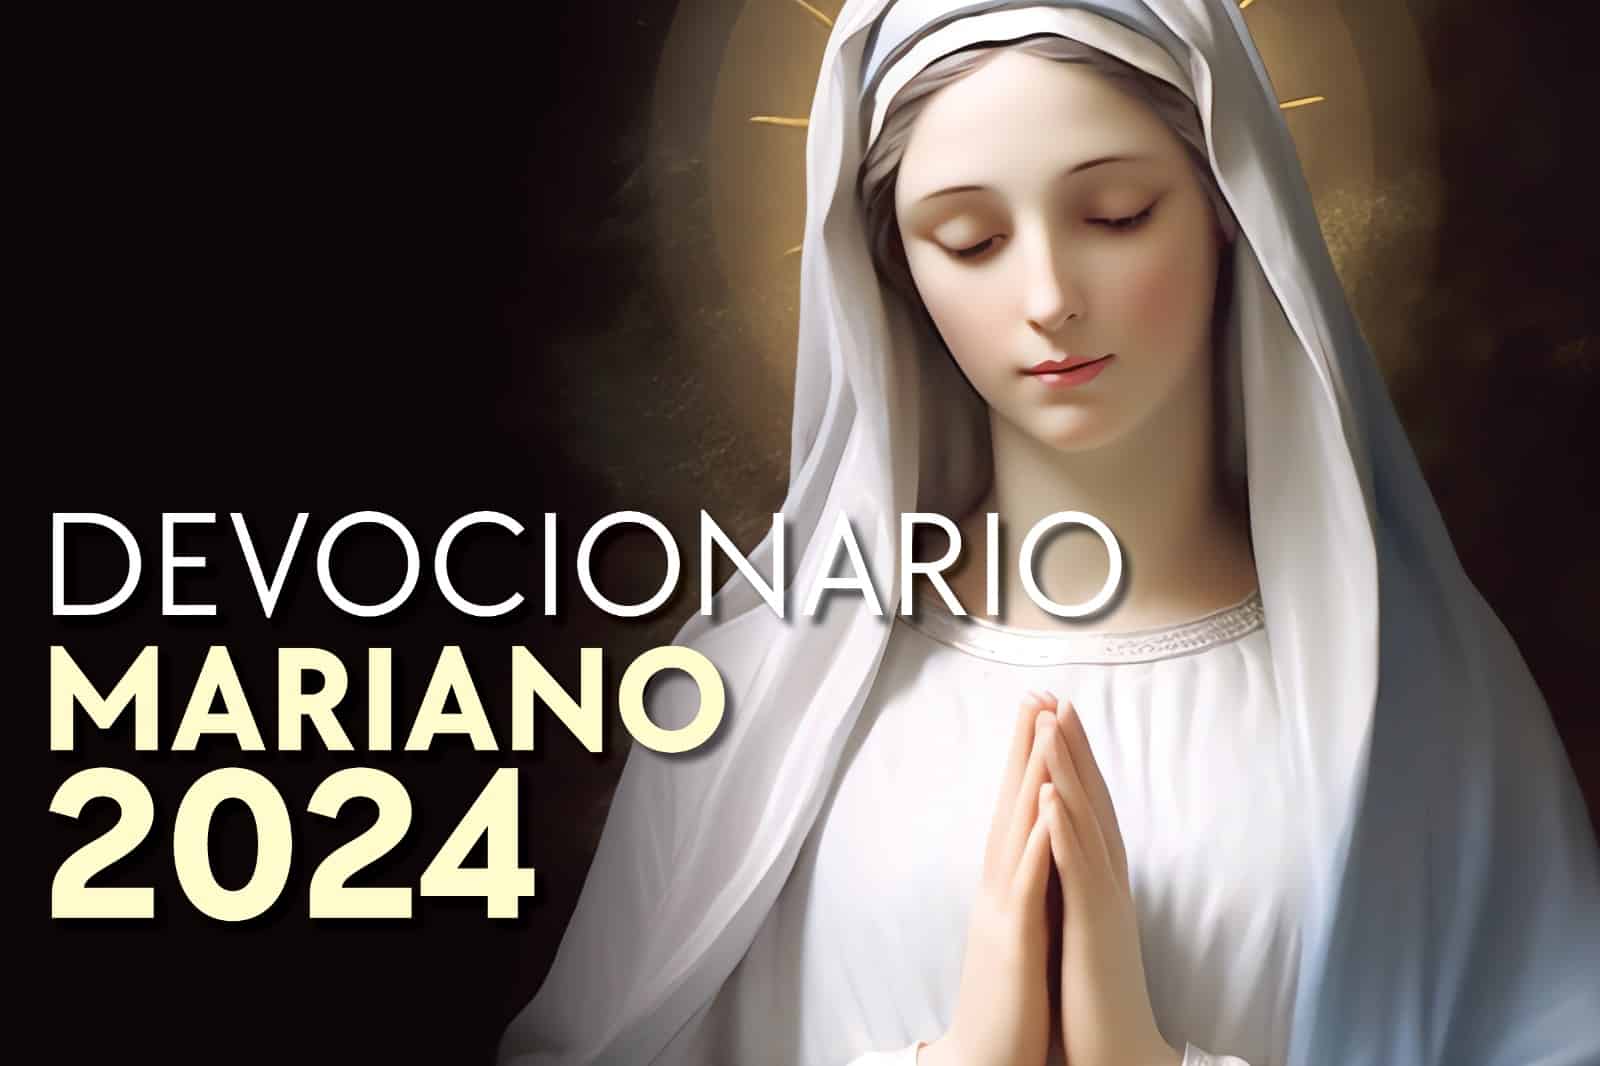 Devocionario católico mariano en pdf para descargar gratis (para 2024)